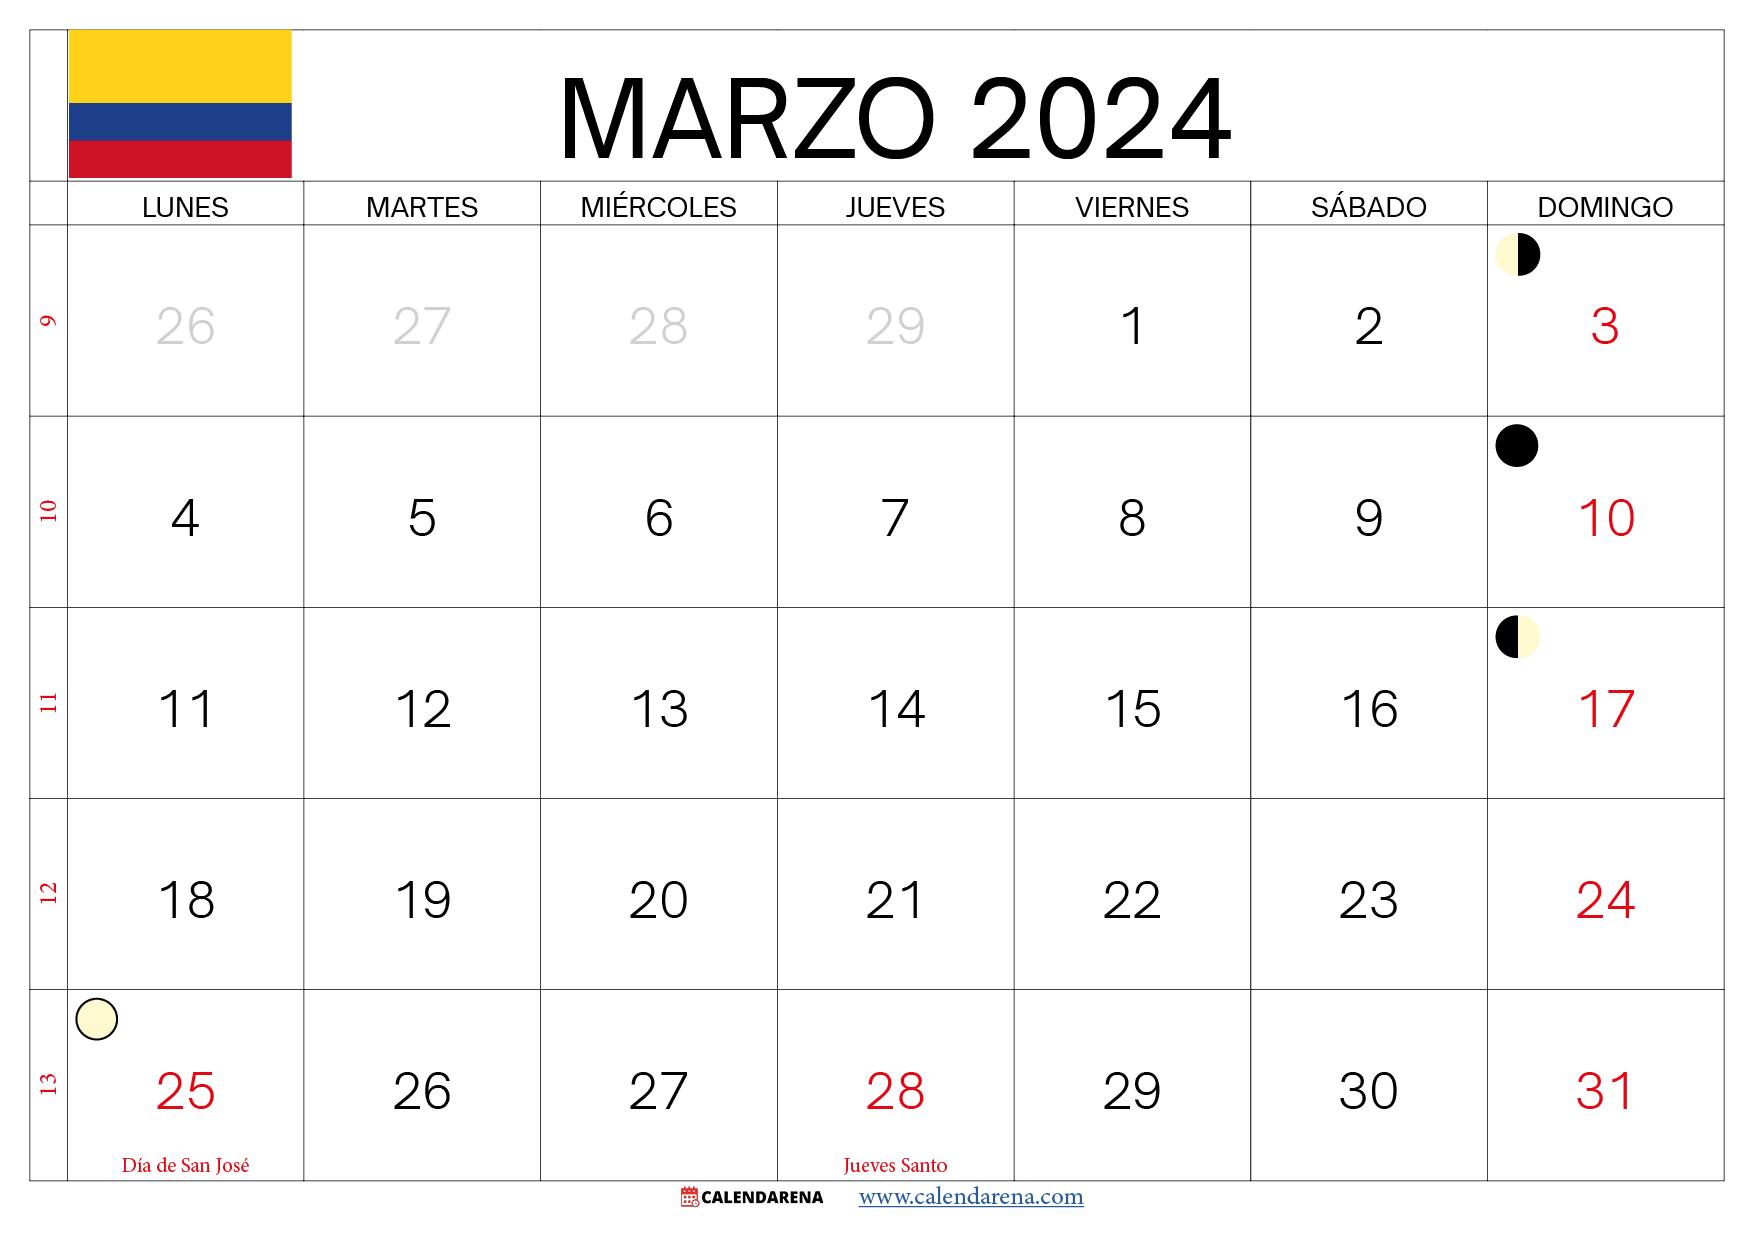 calendario de marzo 2024 colombia